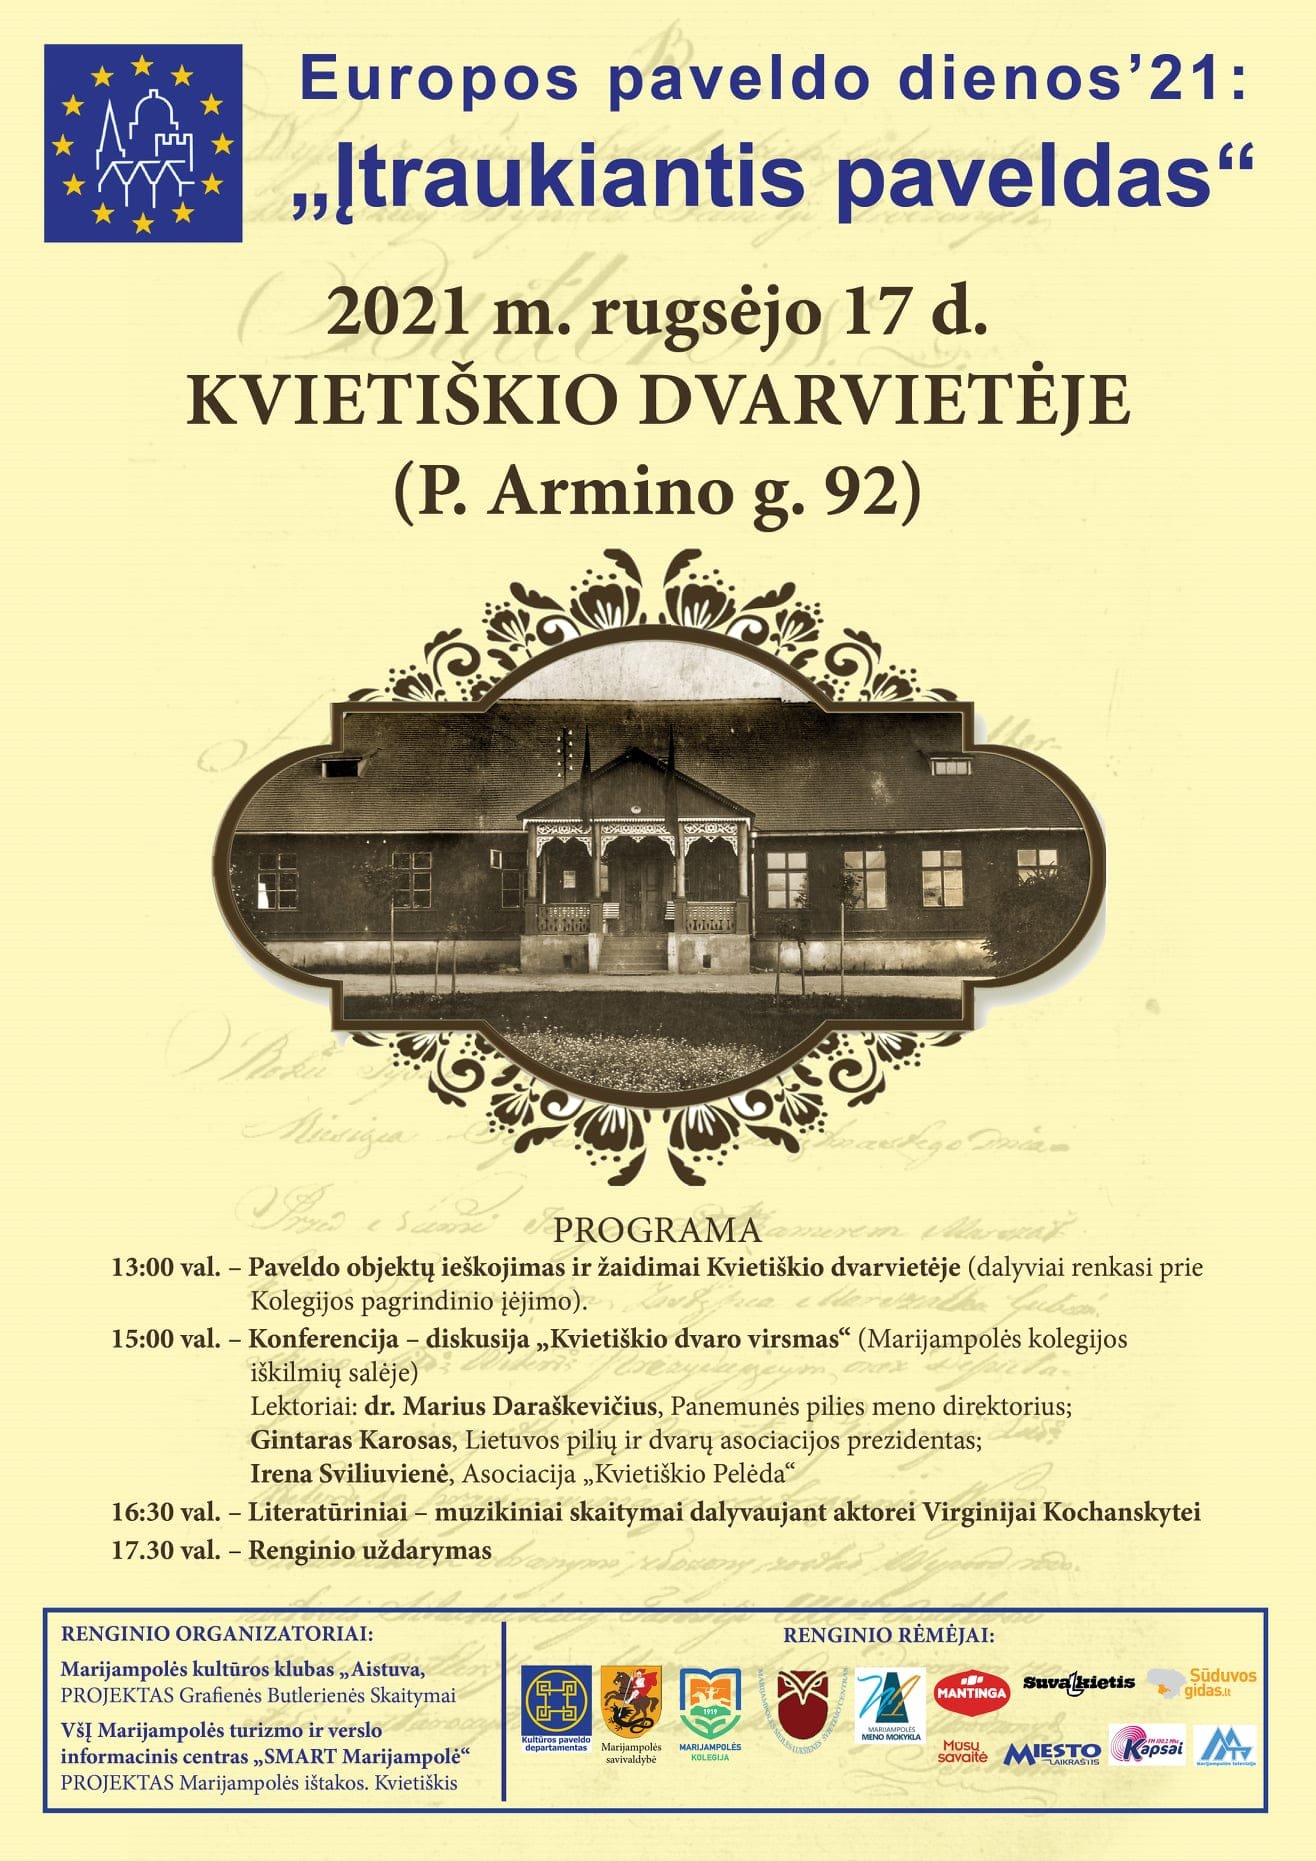 You are currently viewing Kvietiškio dvarvietėje organizuojamas Europos paveldo dienų’21 renginys